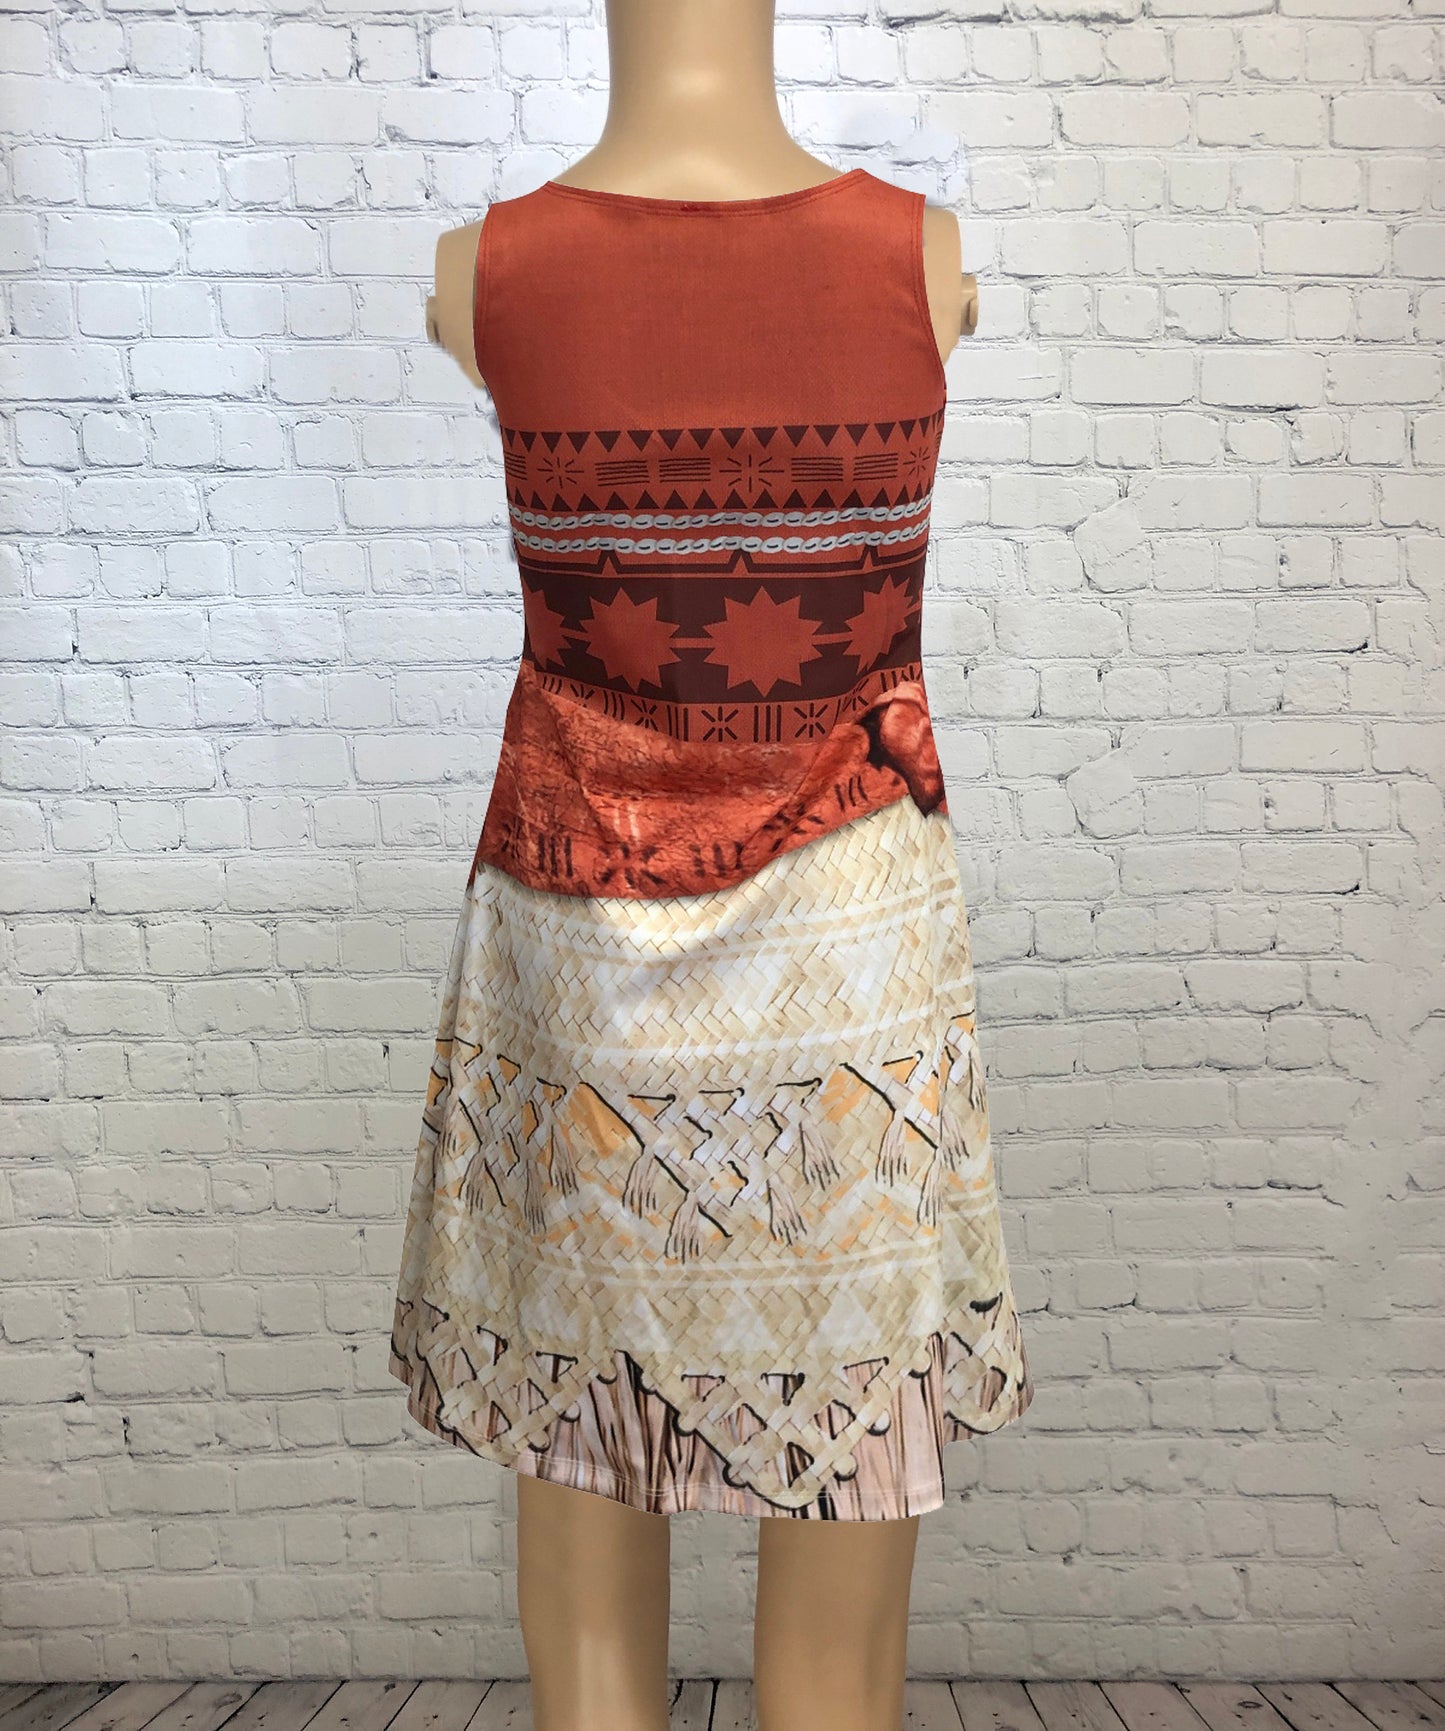 Moana Inspired Sleeveless Dress